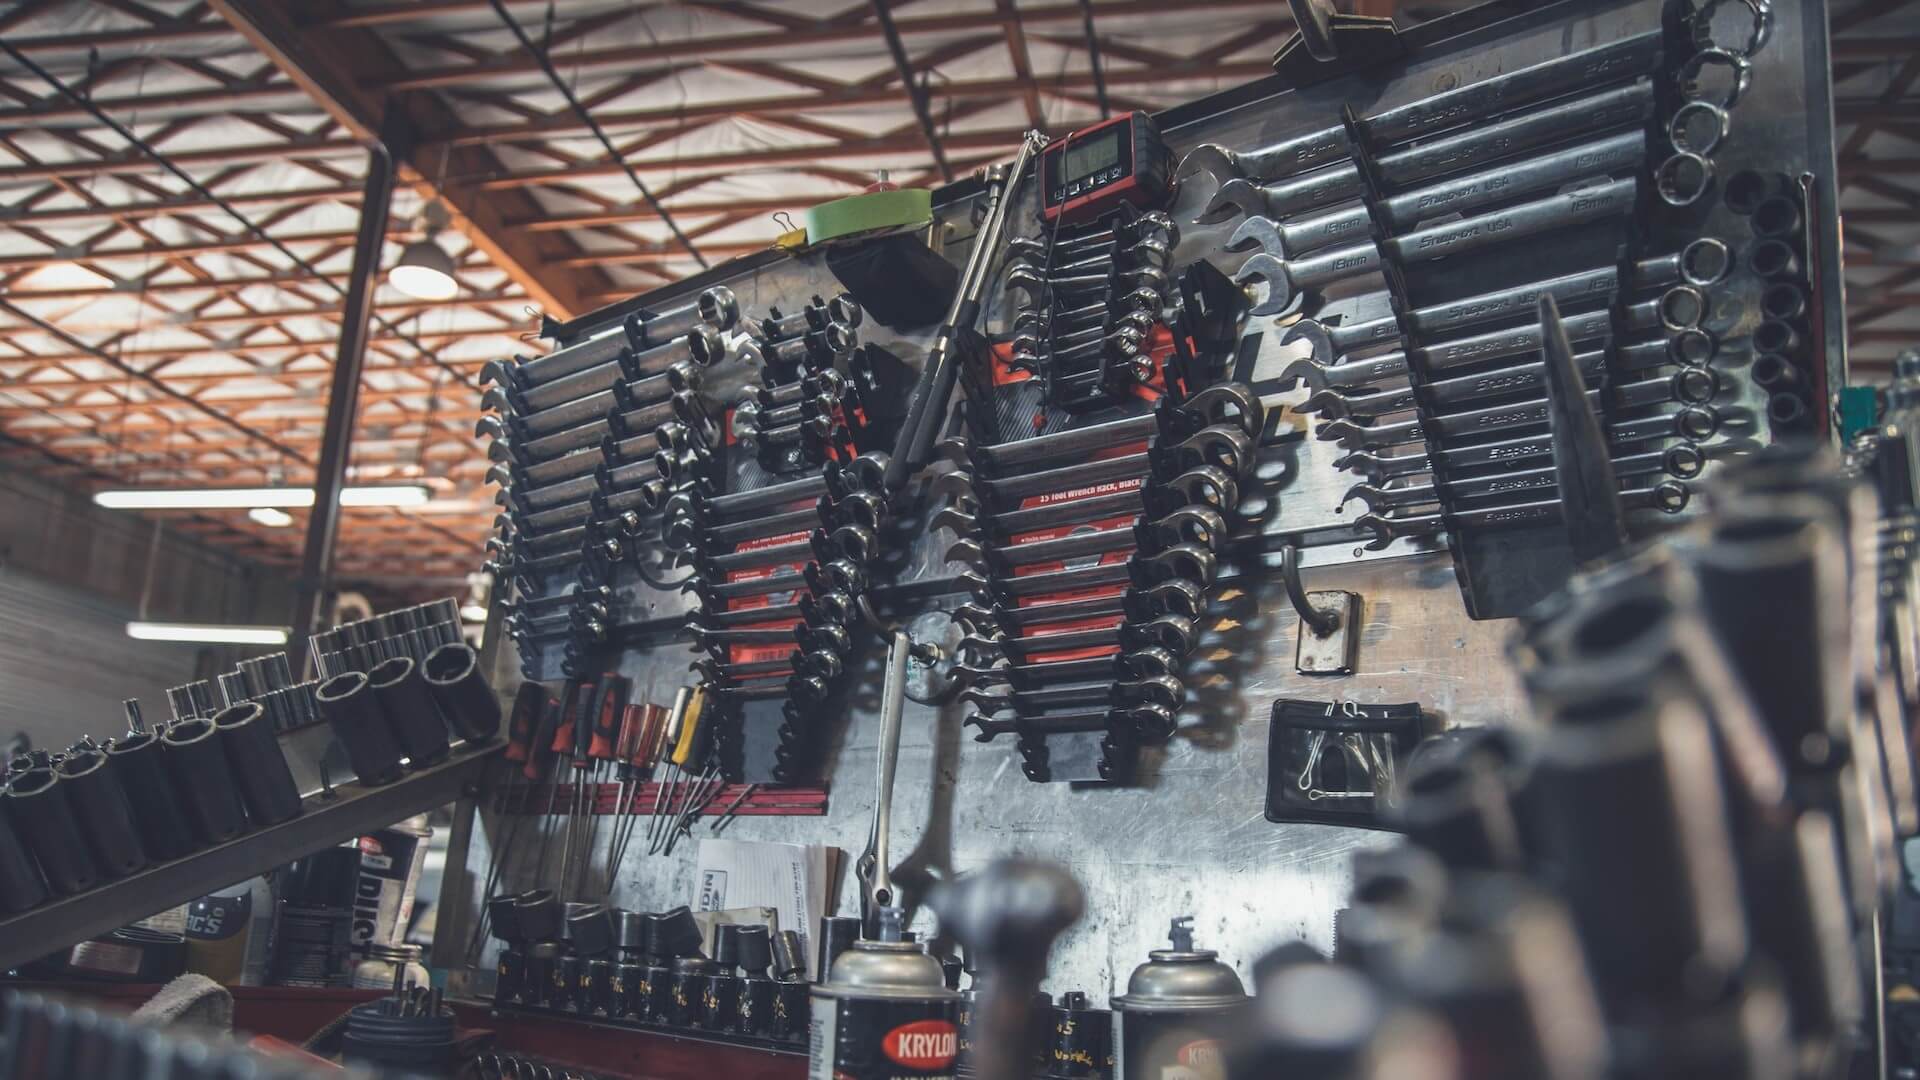 Una escena en el interior de un taller de reparación de automóviles, con herramientas, equipos y vehículos en mantenimiento o reparación.